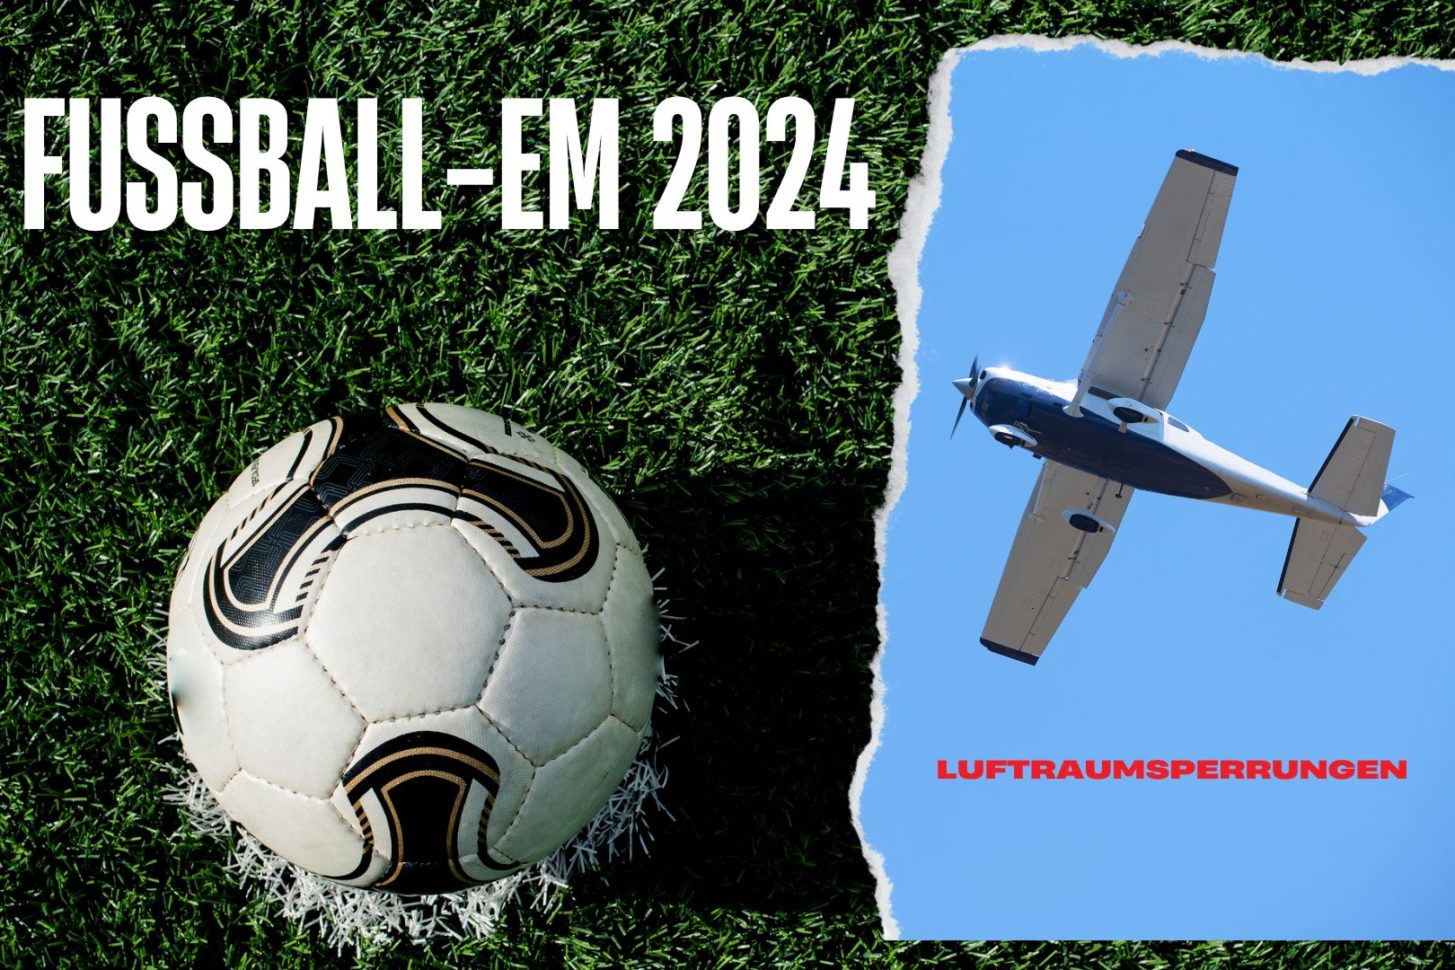 Während der Fußball-EM 2024 gibt es einige Sperrrungen im Luftraum (Symbolfoto).